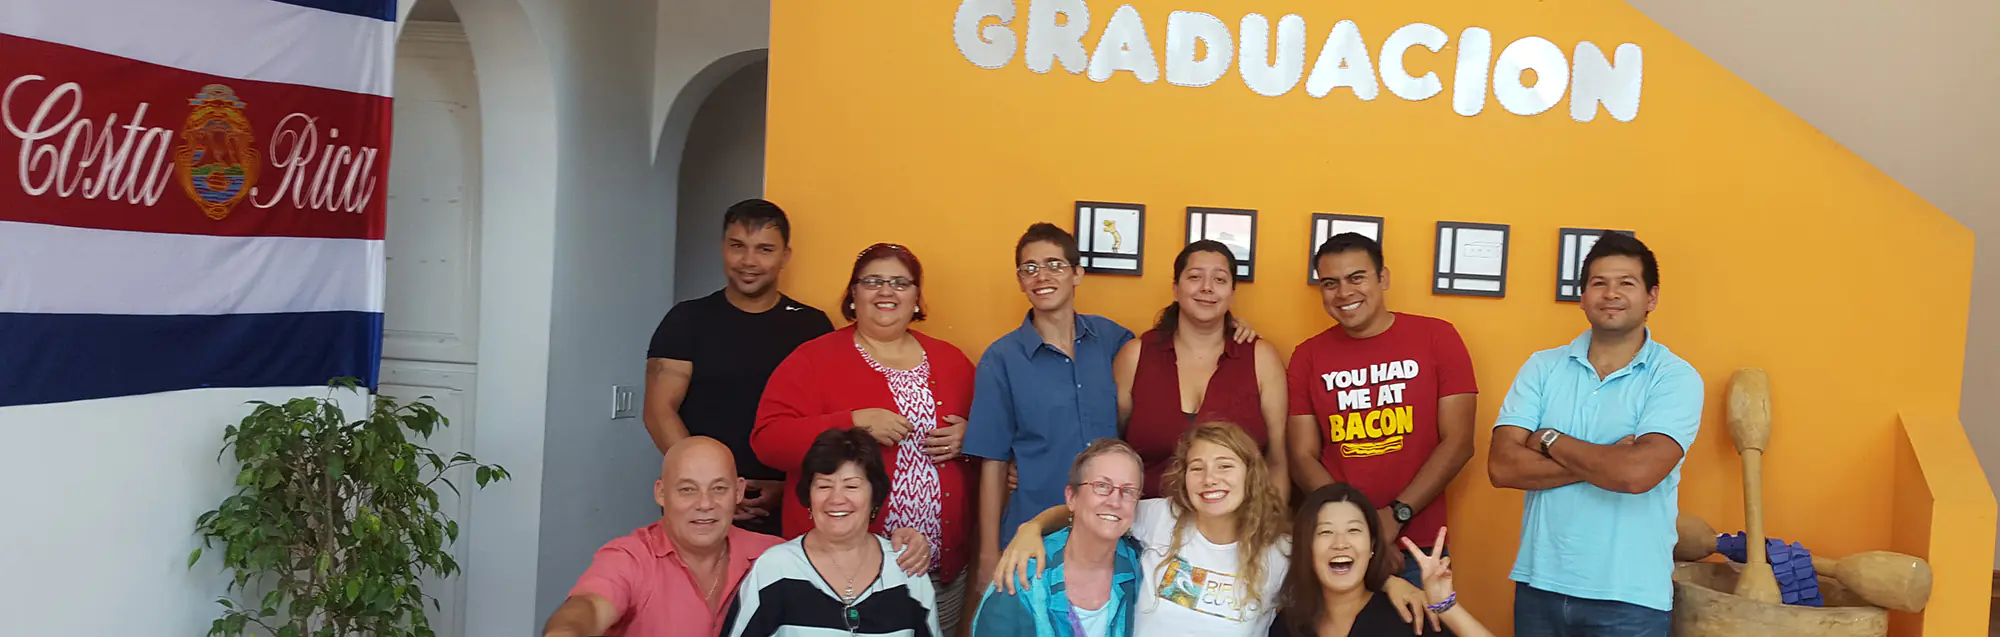 Als Bildungsurlaub anerkannte Sprachkurse bei Don Quijote Santo Domingo de Heredia